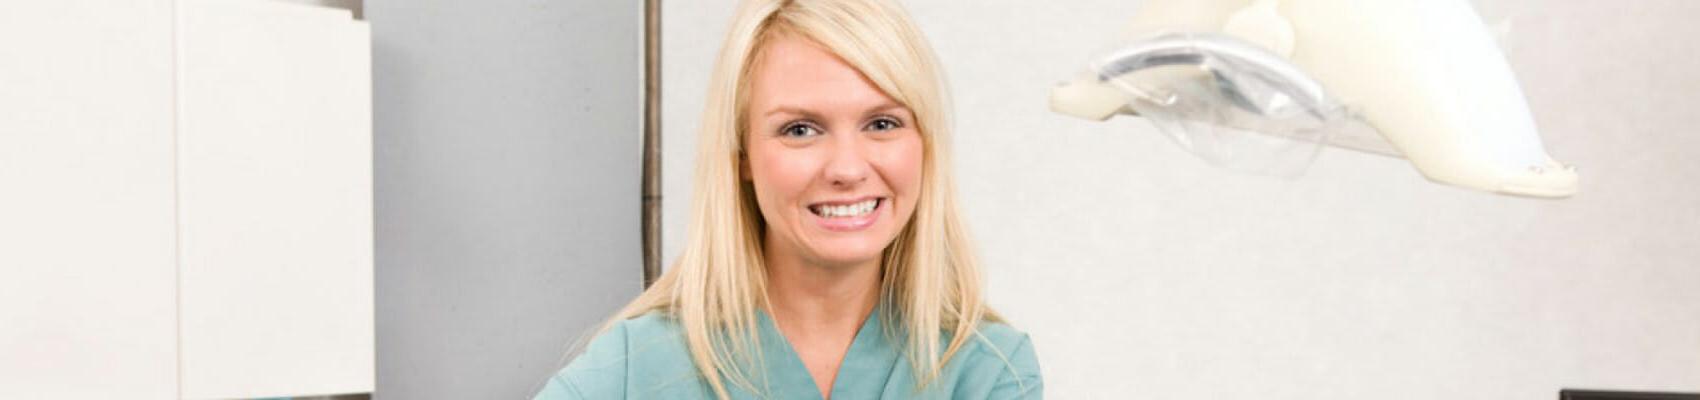 Dental Hygienist smiling